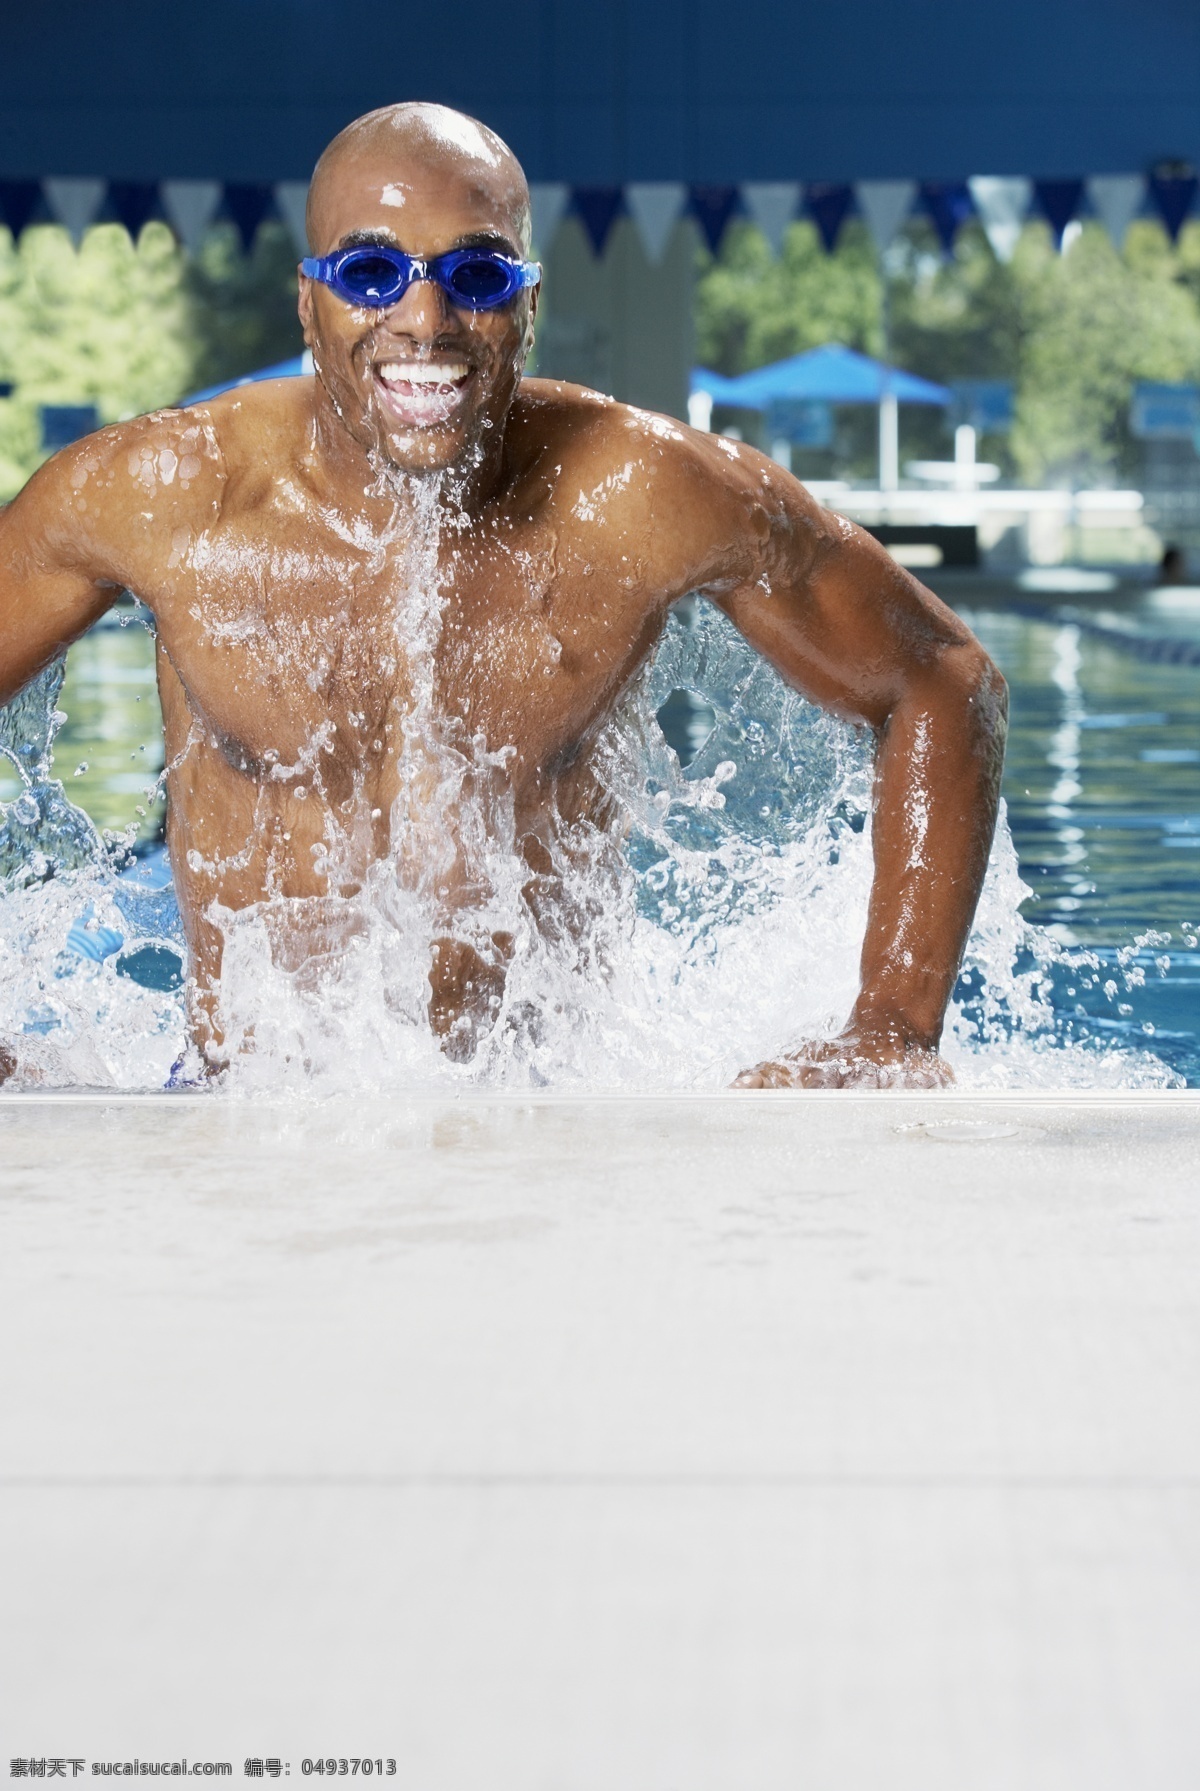 黑人 男性 游泳 运动员 高清 体育运动 体育项目 体育比赛 外国人 游泳运动员 摄影图 高清图片 生活百科 白色